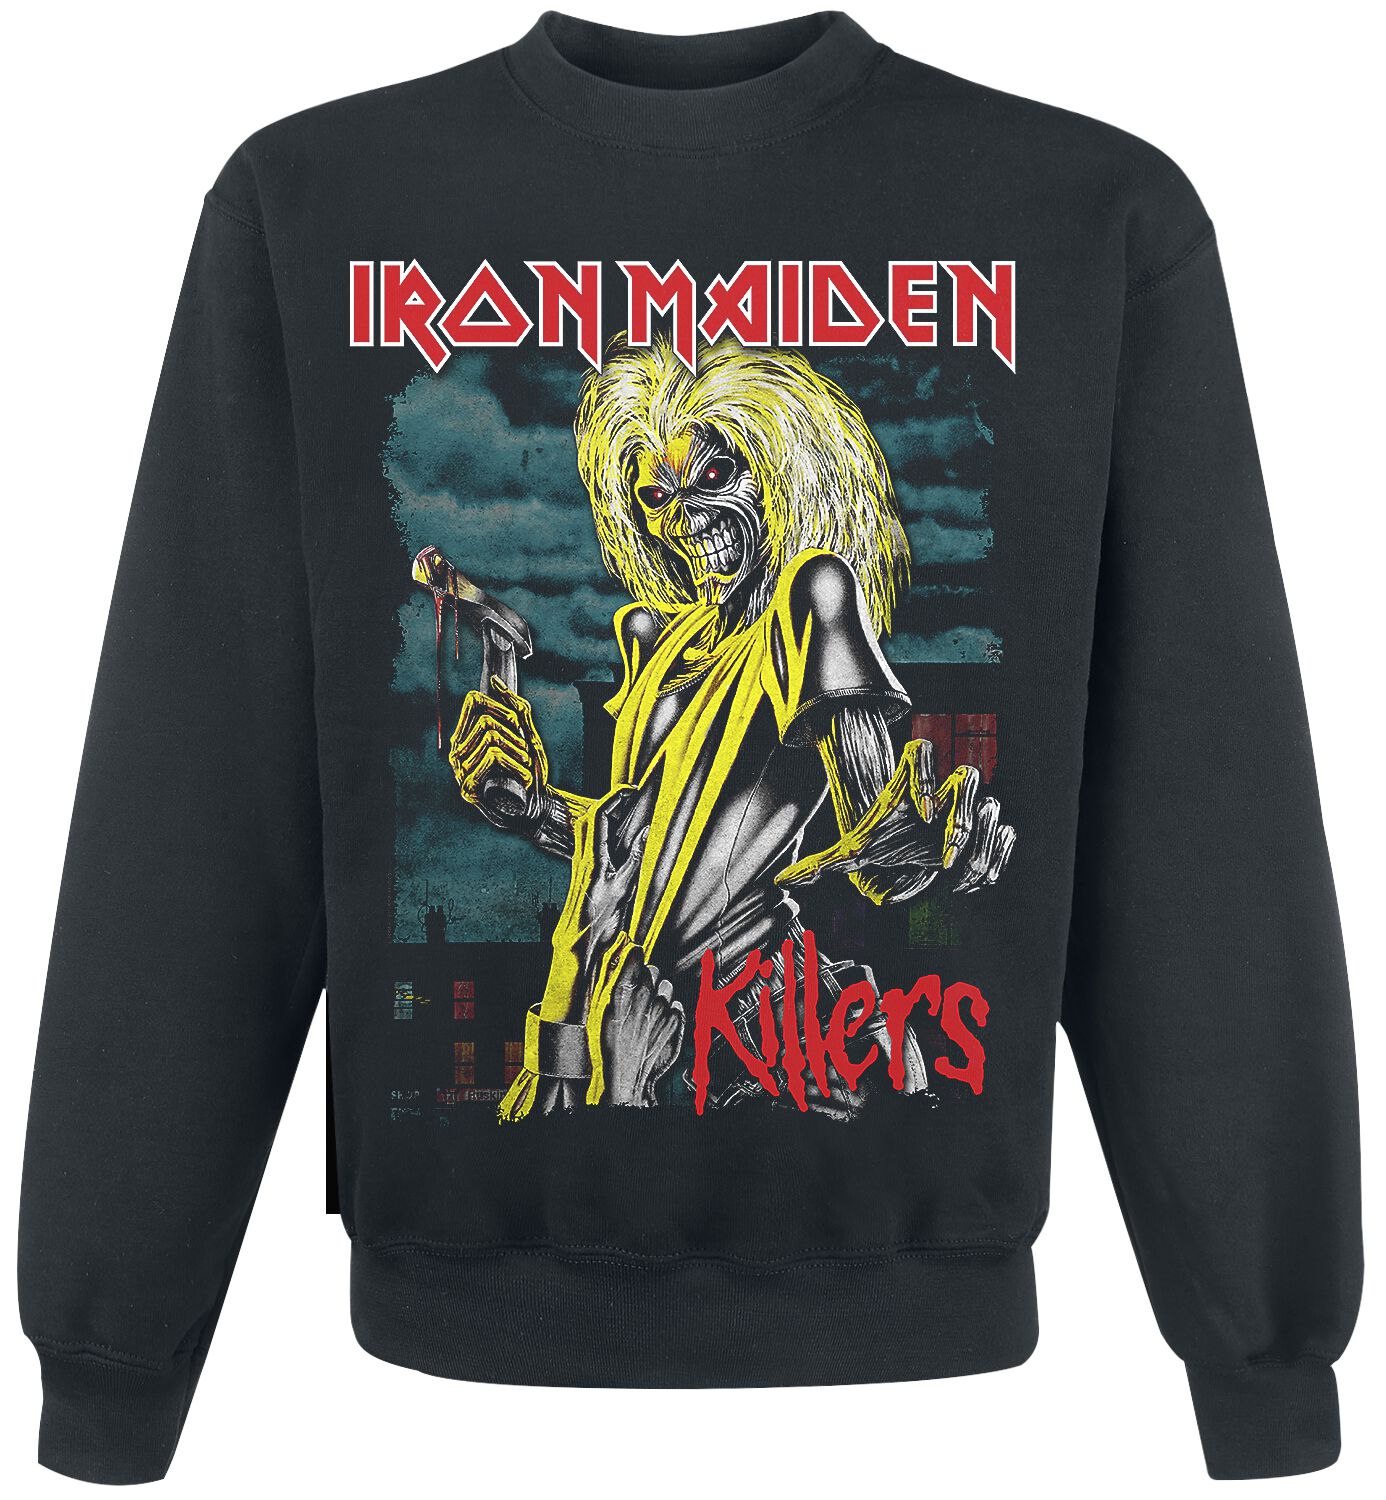 Iron Maiden Sweatshirt - Killers Green Clouds - S bis XXL - für Männer - Größe L - schwarz  - Lizenziertes Merchandise!